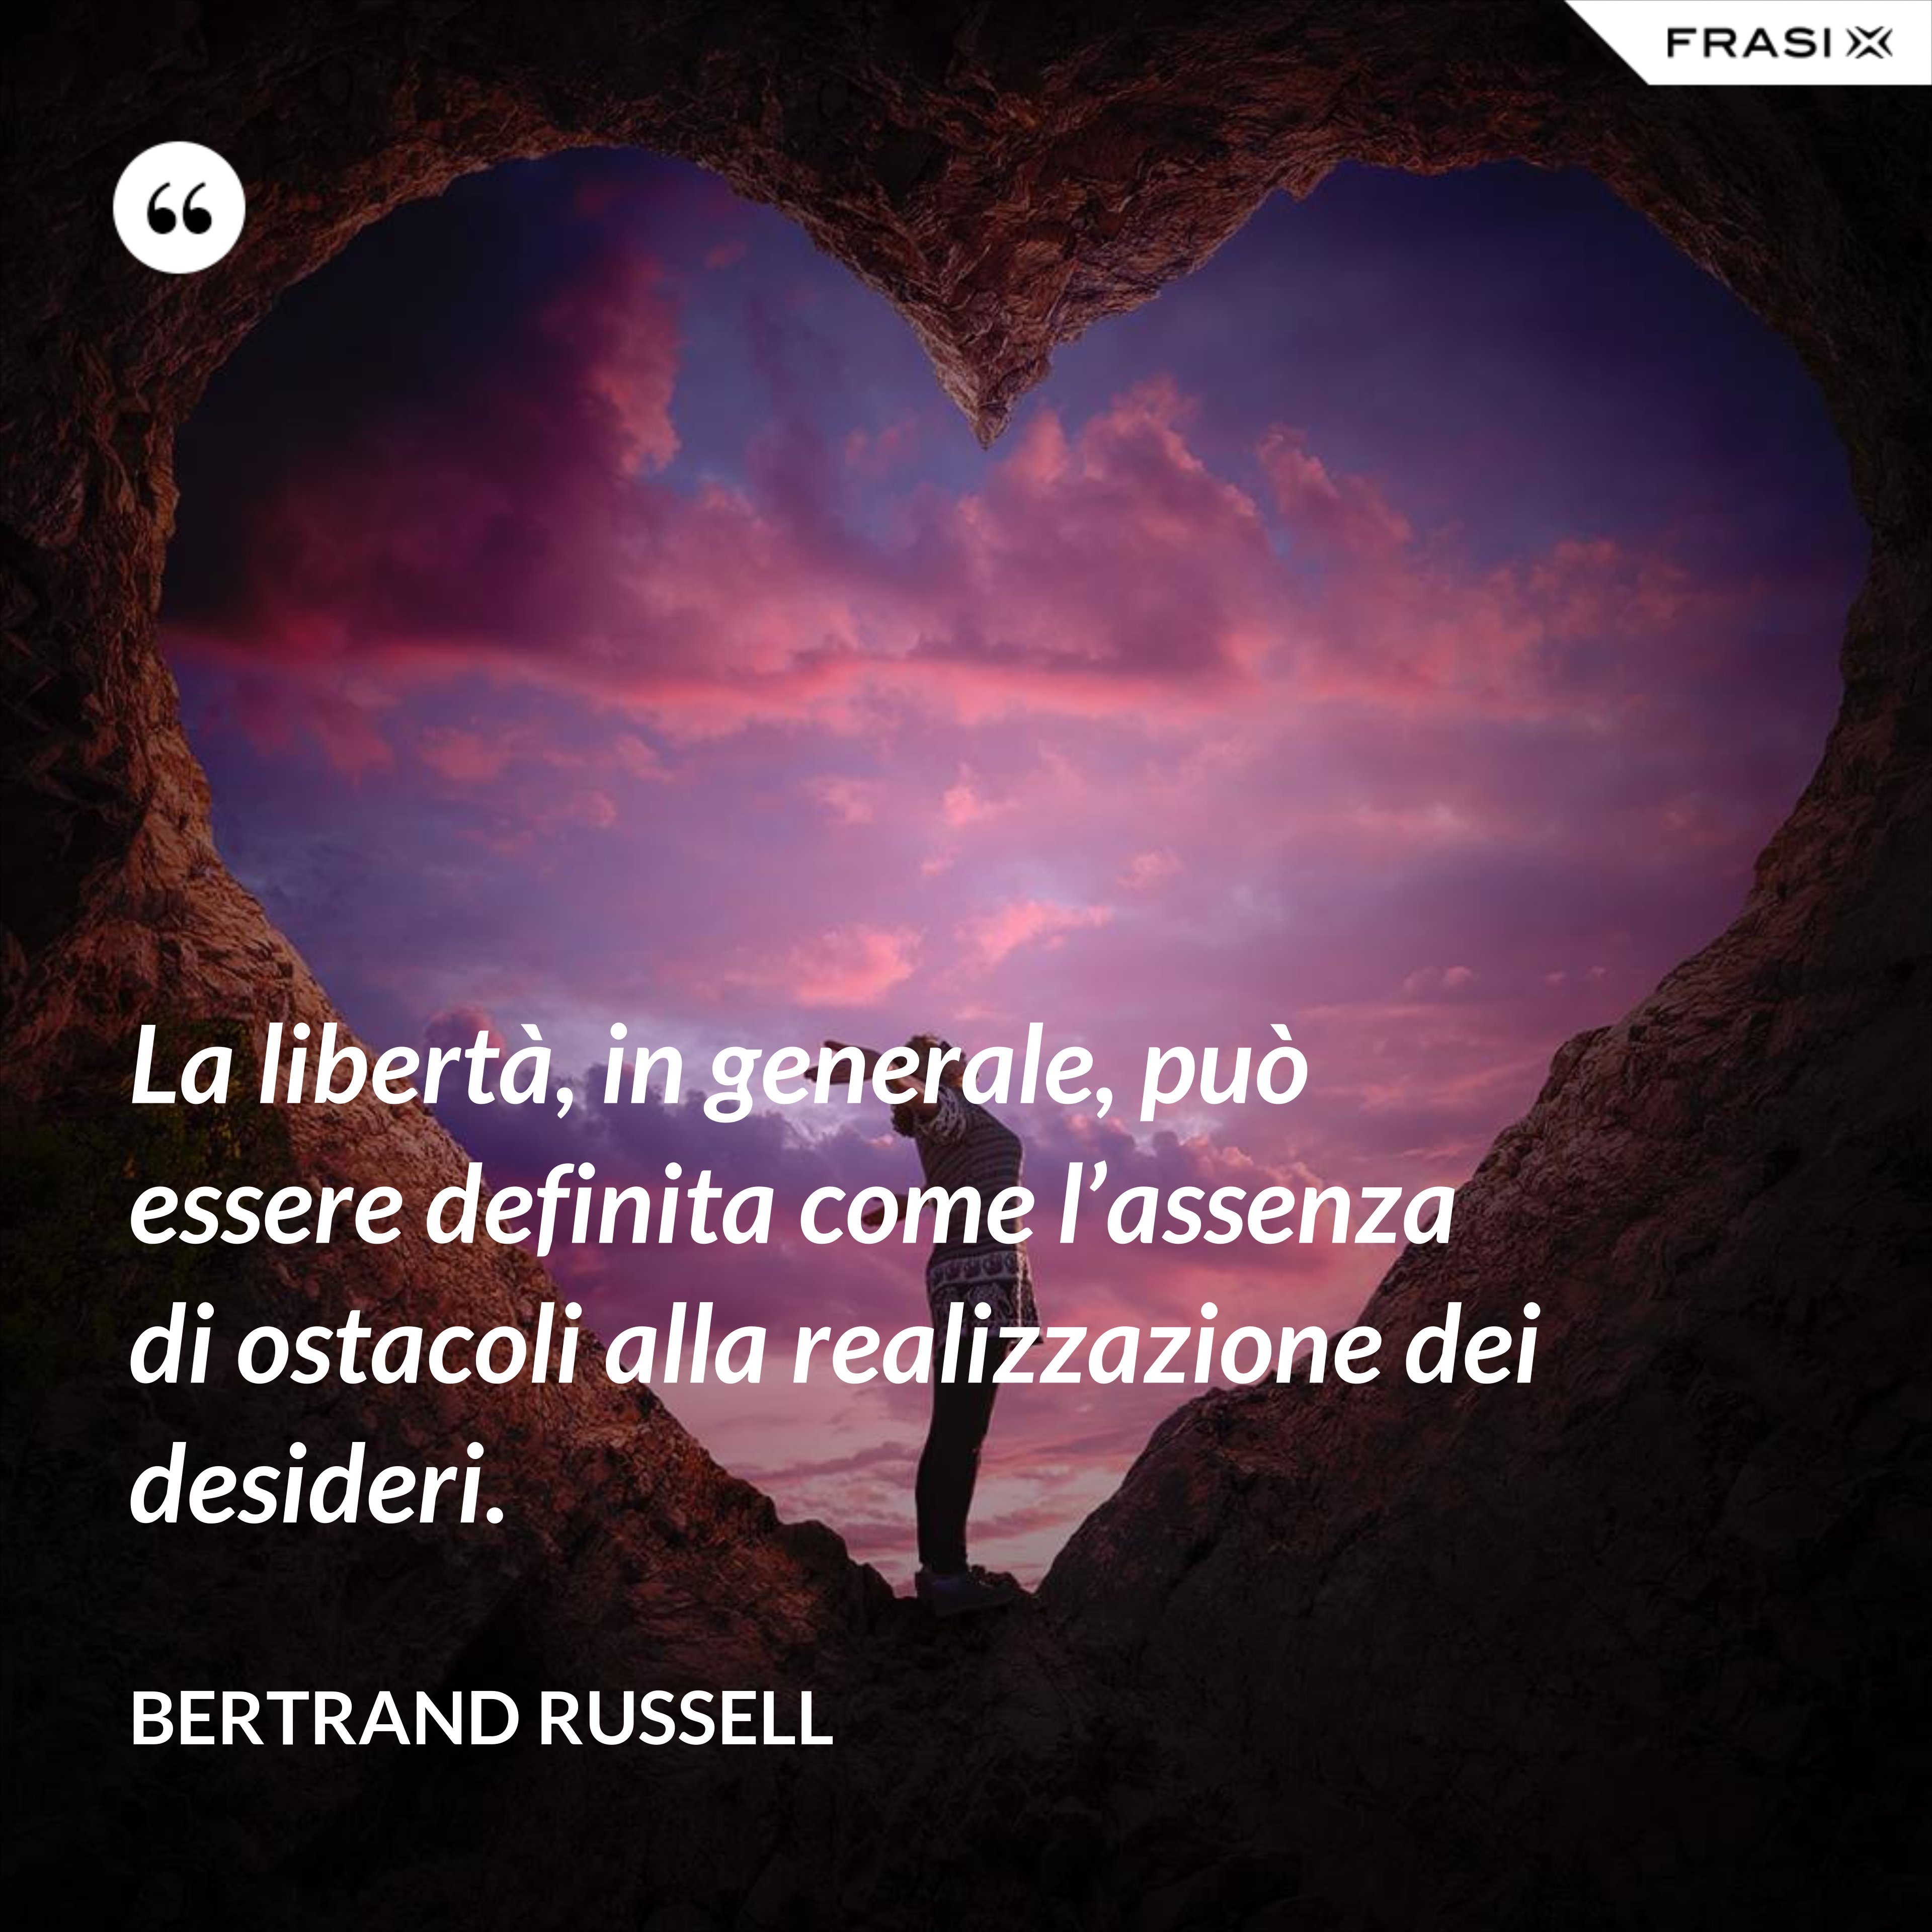 La libertà, in generale, può essere definita come l’assenza di ostacoli alla realizzazione dei desideri. - Bertrand Russell